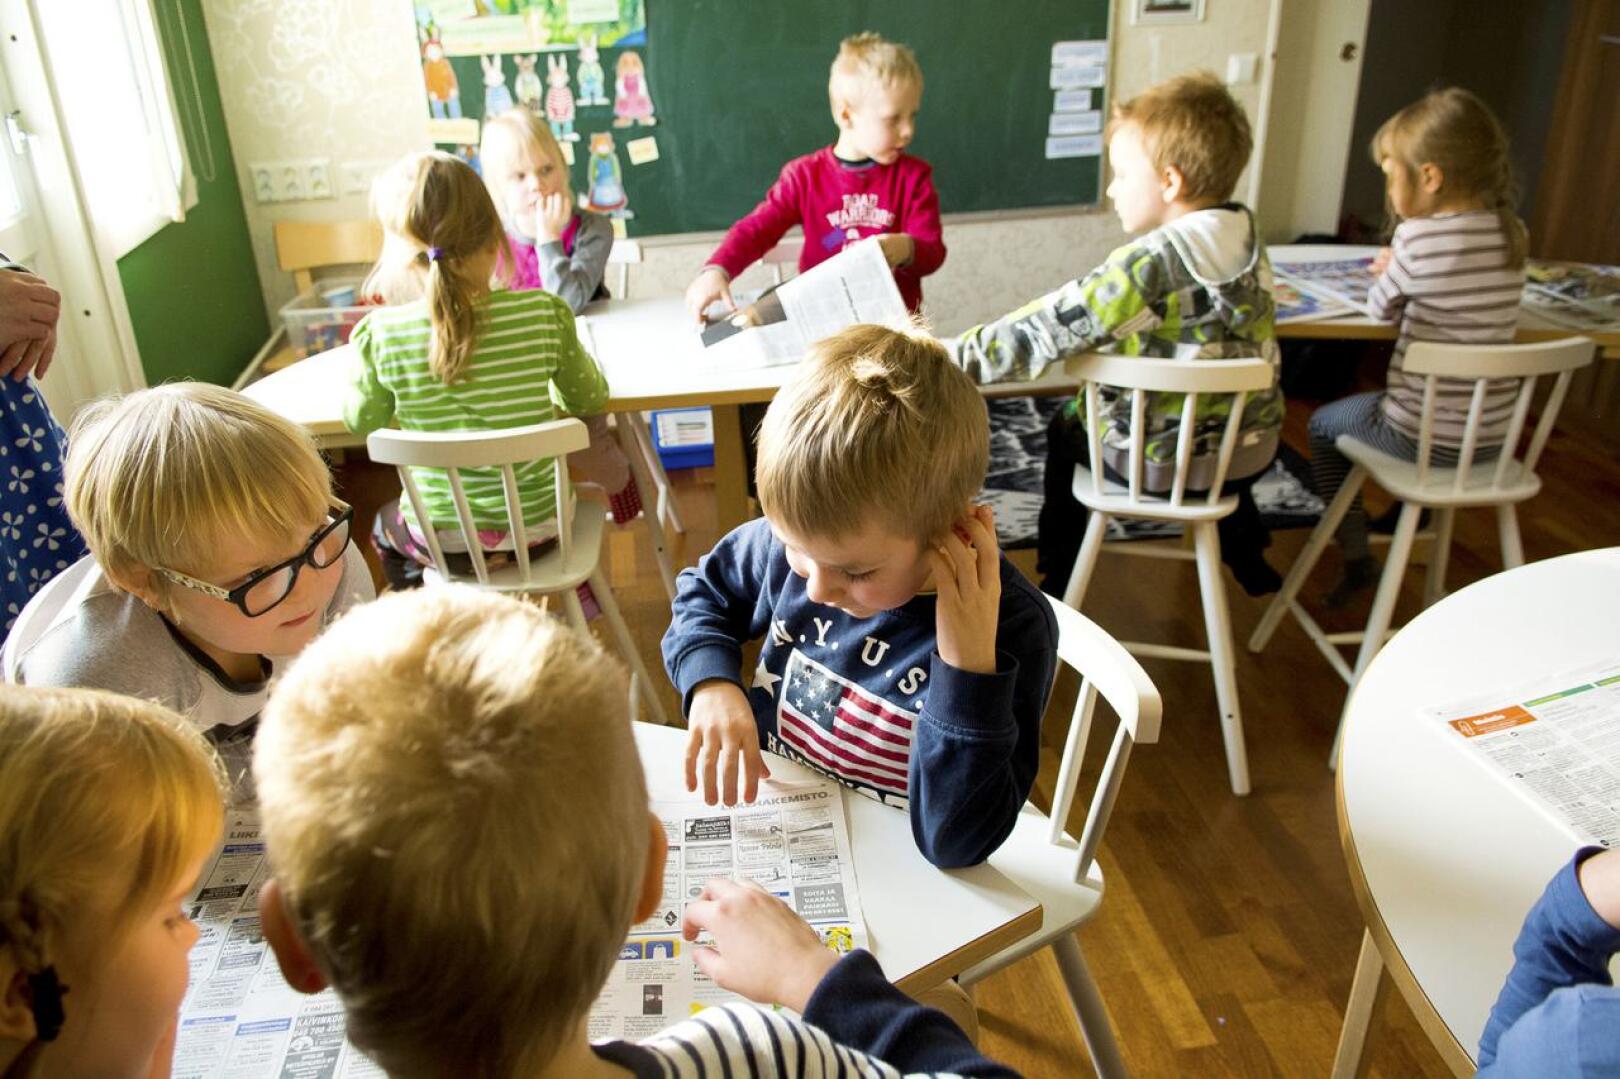 Seuraavan kahden vuoden ajan Nivalan esikouluissa opiskelee myös 5-vuotiaita. Nivalassa oletetaan, että kaksivuotinen esikoulu jää kokeilun jälkeen pysyväksi. Kuvassa eskareita tutustumassa Nivala-lehteen Sanomalehtiviikolla (nyk. Uutisten viikko) vuonna 2017.